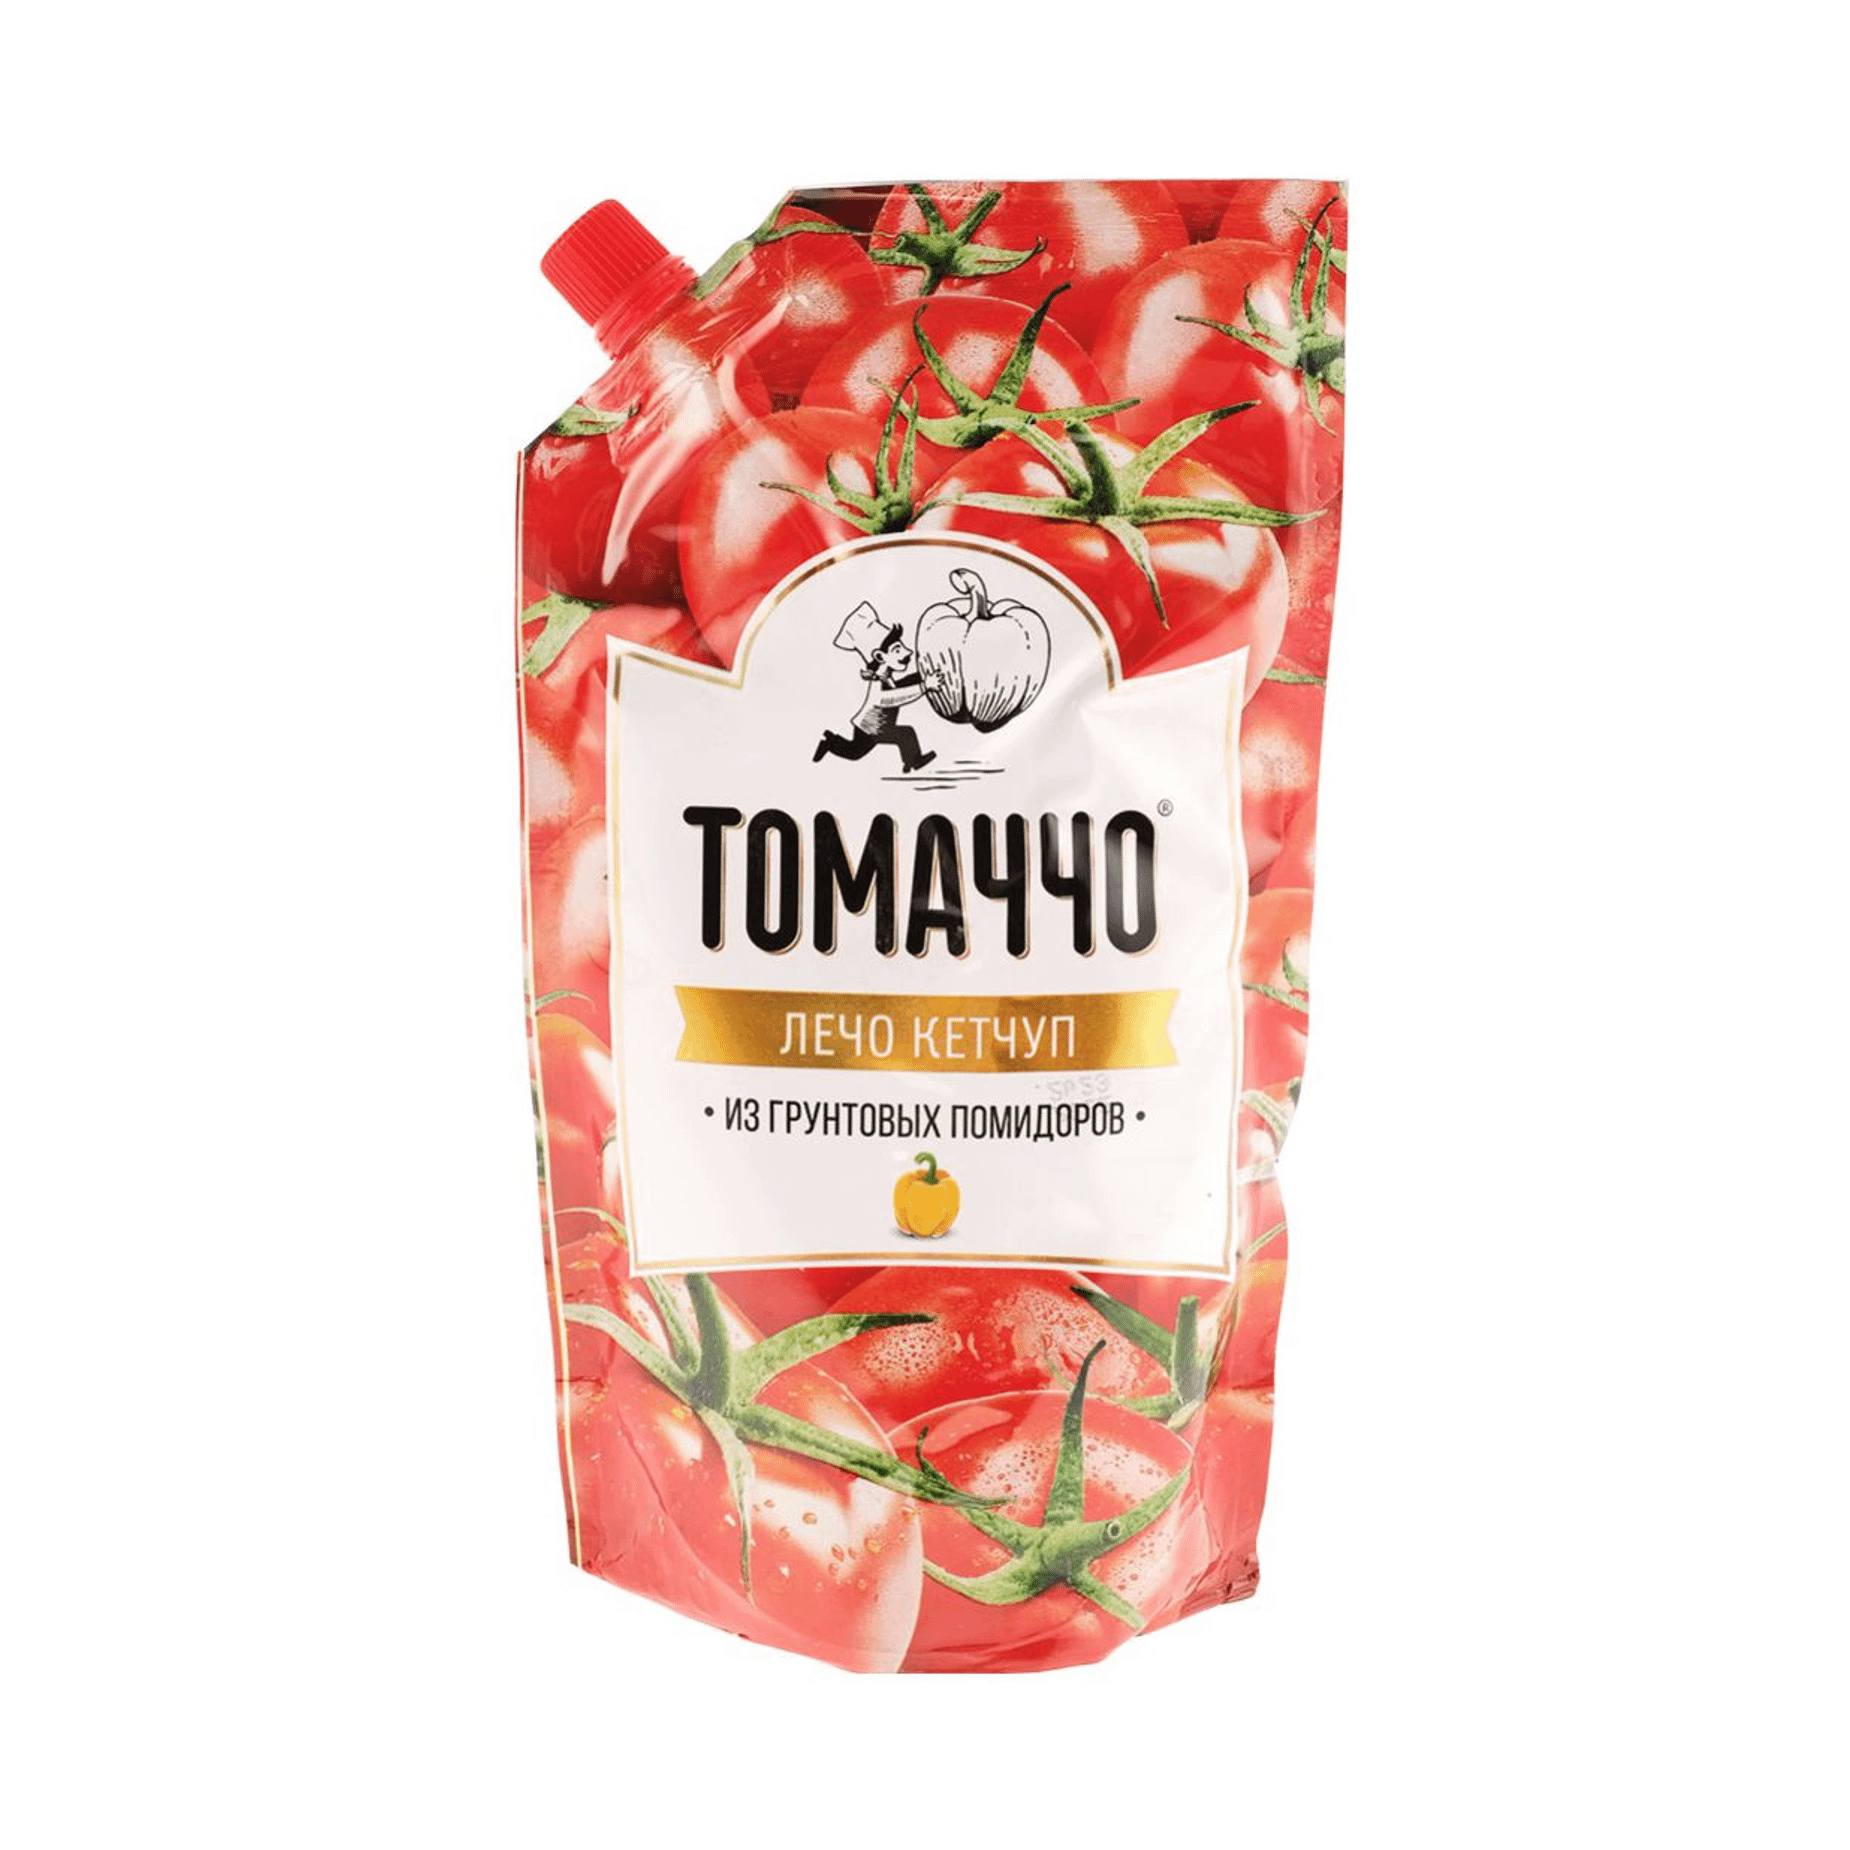 Кетчуп Томаччо Лечо 500 г кетчуп томатный махеевъ лечо 500 г